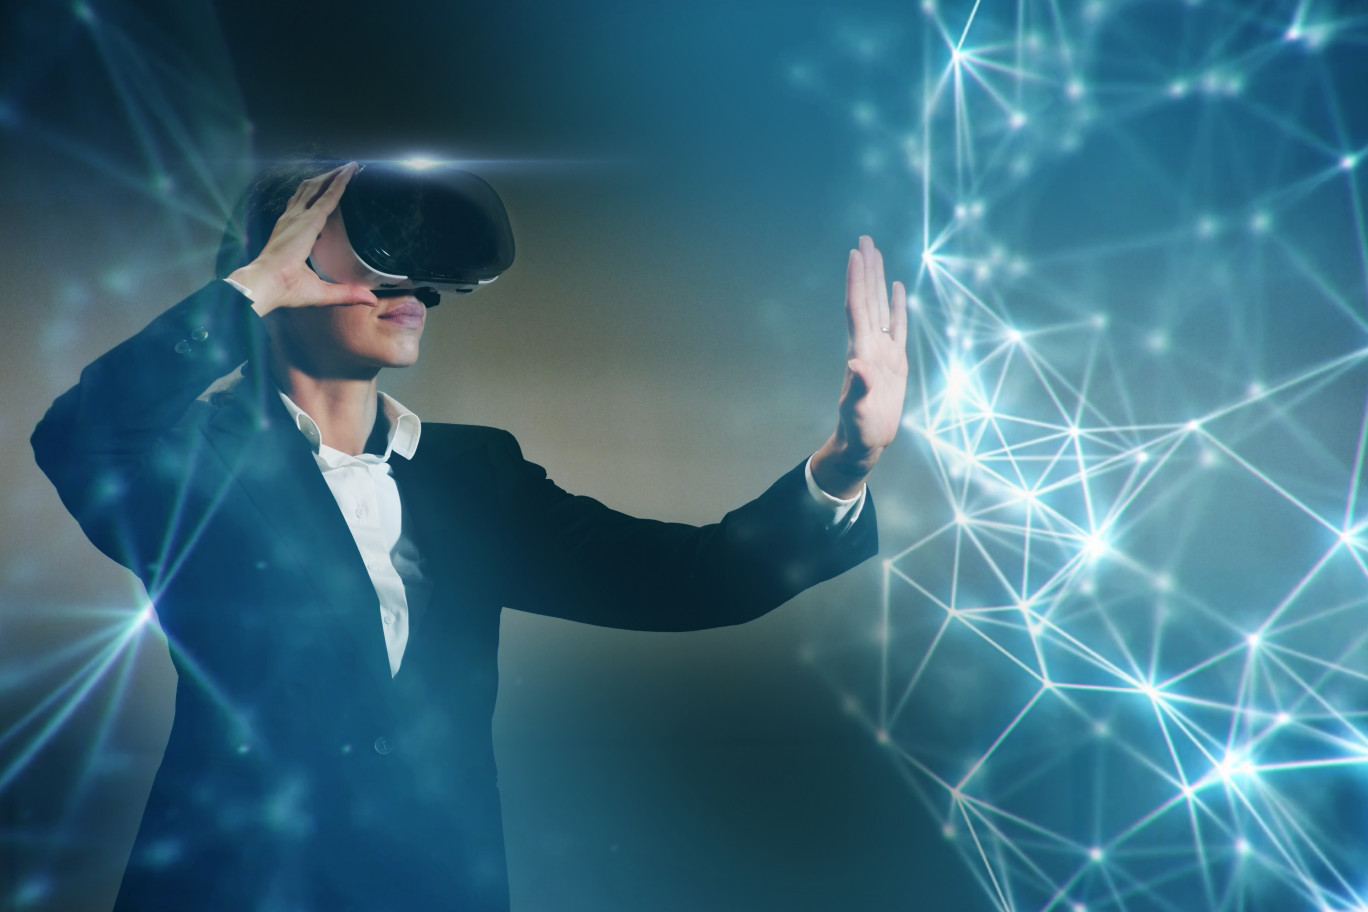 Déceler des traits de personnalité via une solution de réalité virtuelle. (c) Oddity VR.